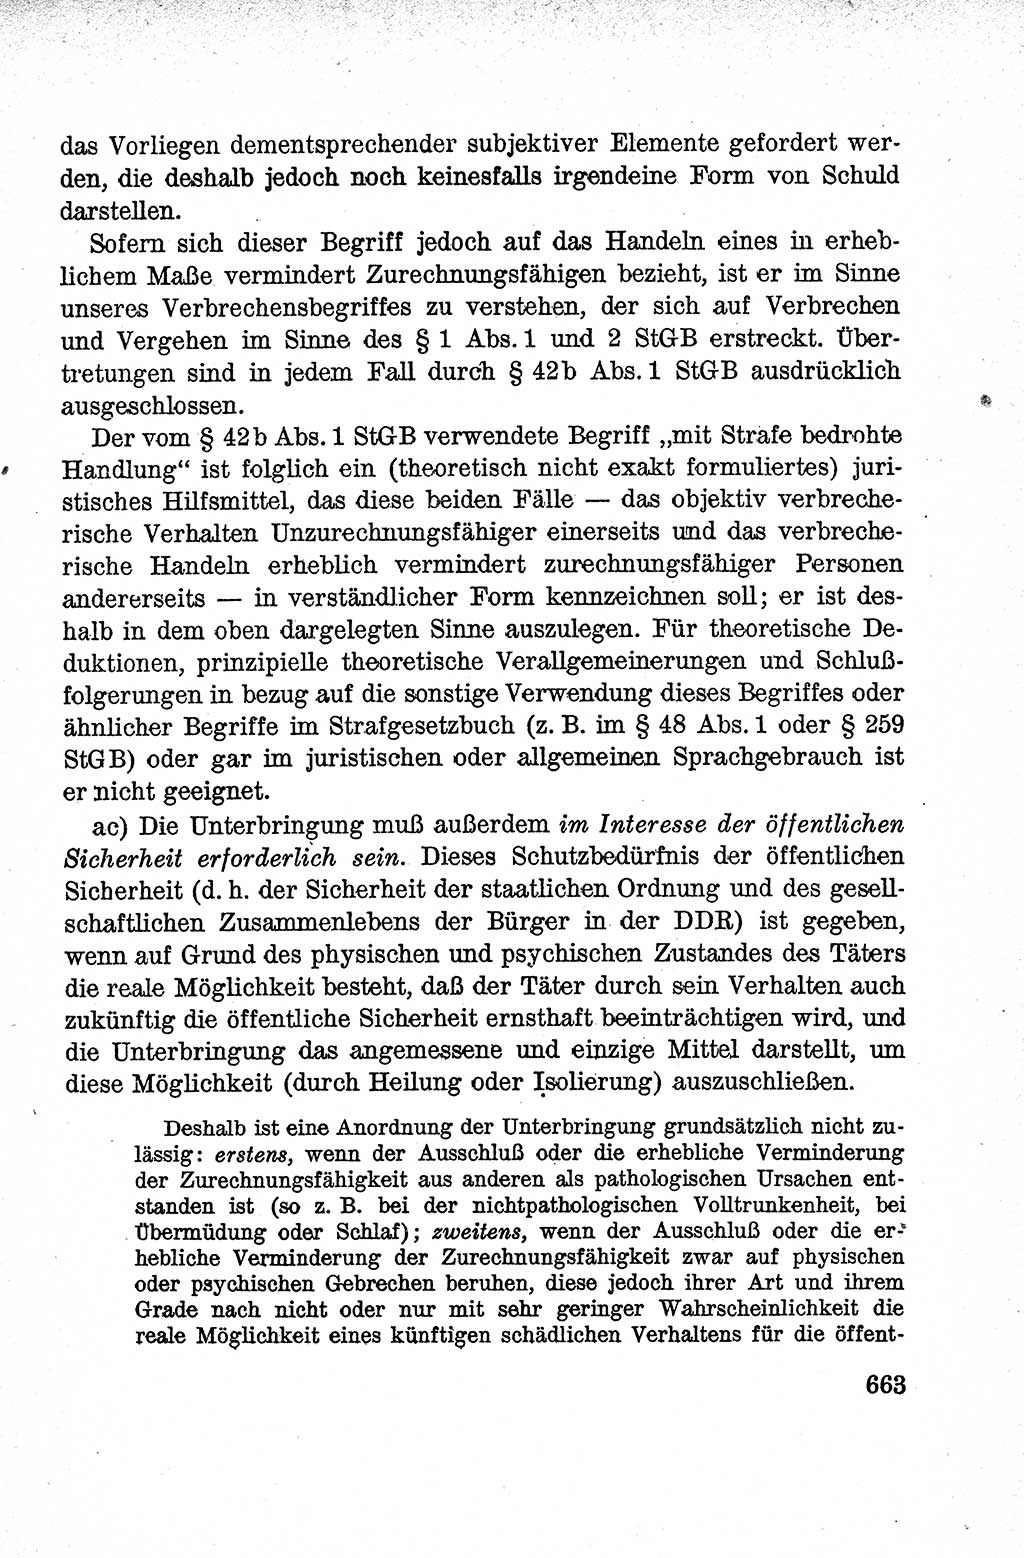 Lehrbuch des Strafrechts der Deutschen Demokratischen Republik (DDR), Allgemeiner Teil 1959, Seite 663 (Lb. Strafr. DDR AT 1959, S. 663)